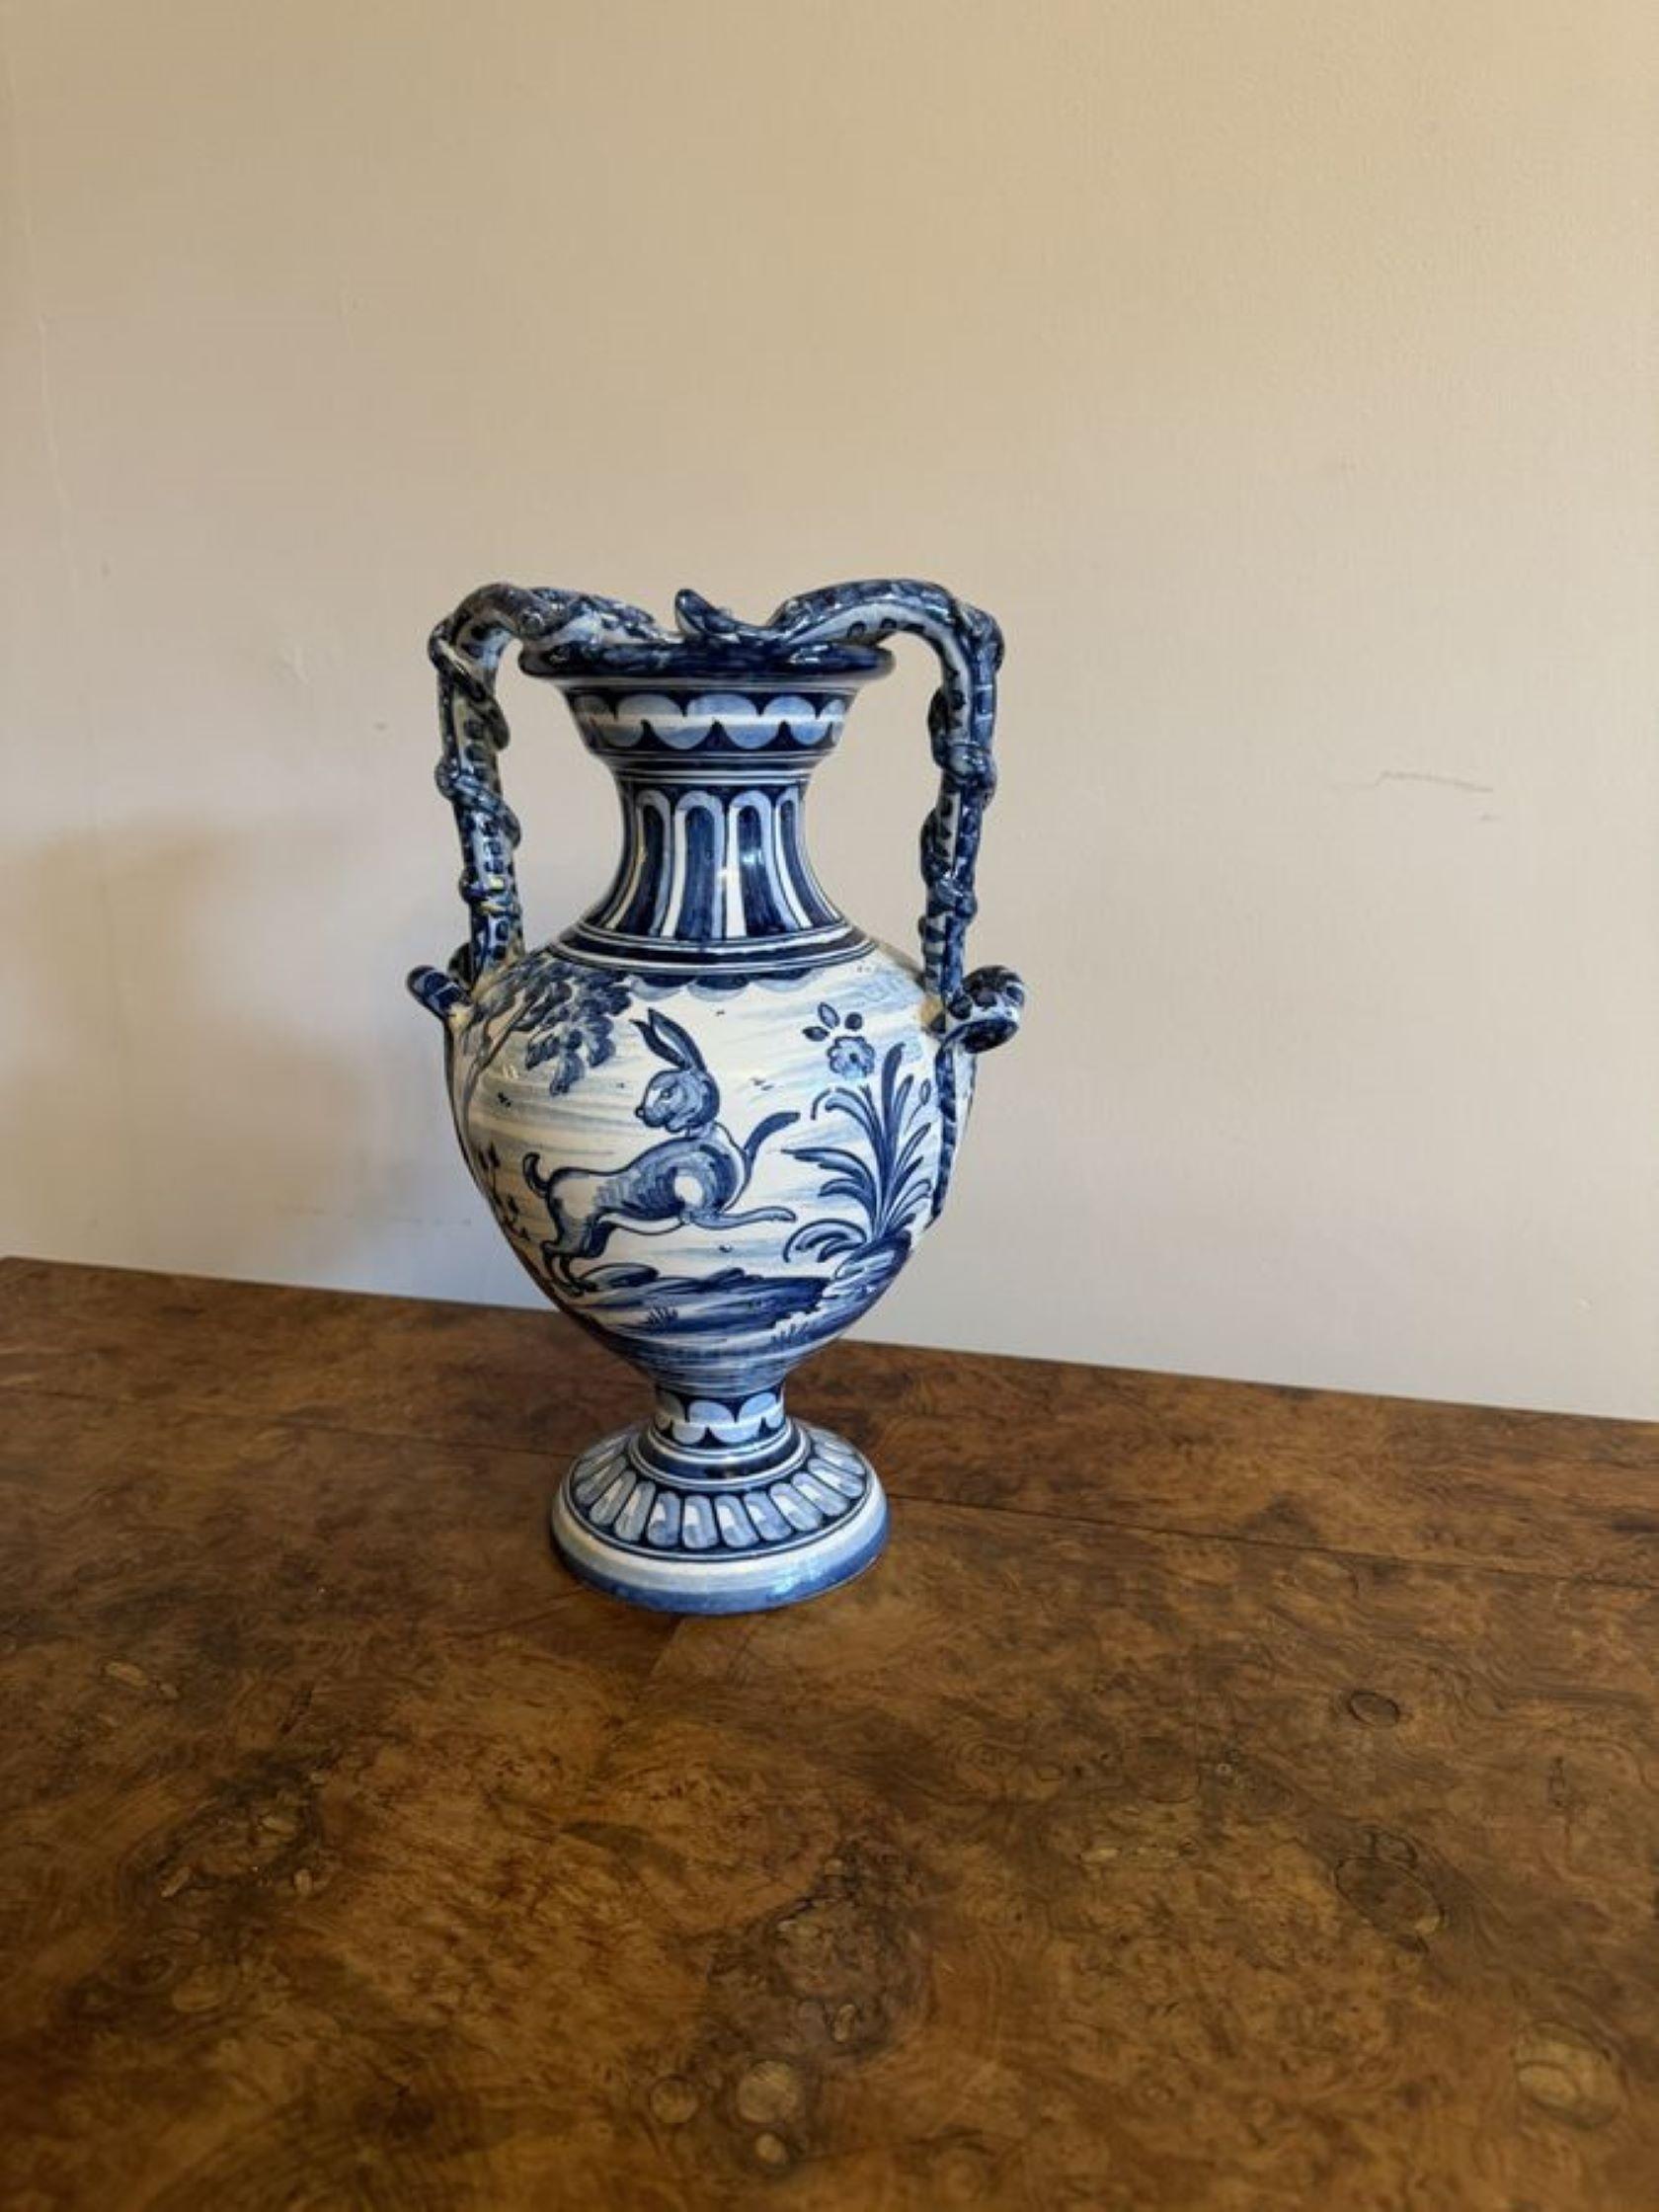 Schöne antike Talavere blau und weiß Vase mit einem schönen antiken blauen und weißen Vase mit zwei geformten Griffe an den Seiten mit Ranken Detaillierung, eine geriffelte geformten Hals über einem bauchigen geformten Körper, atemberaubende